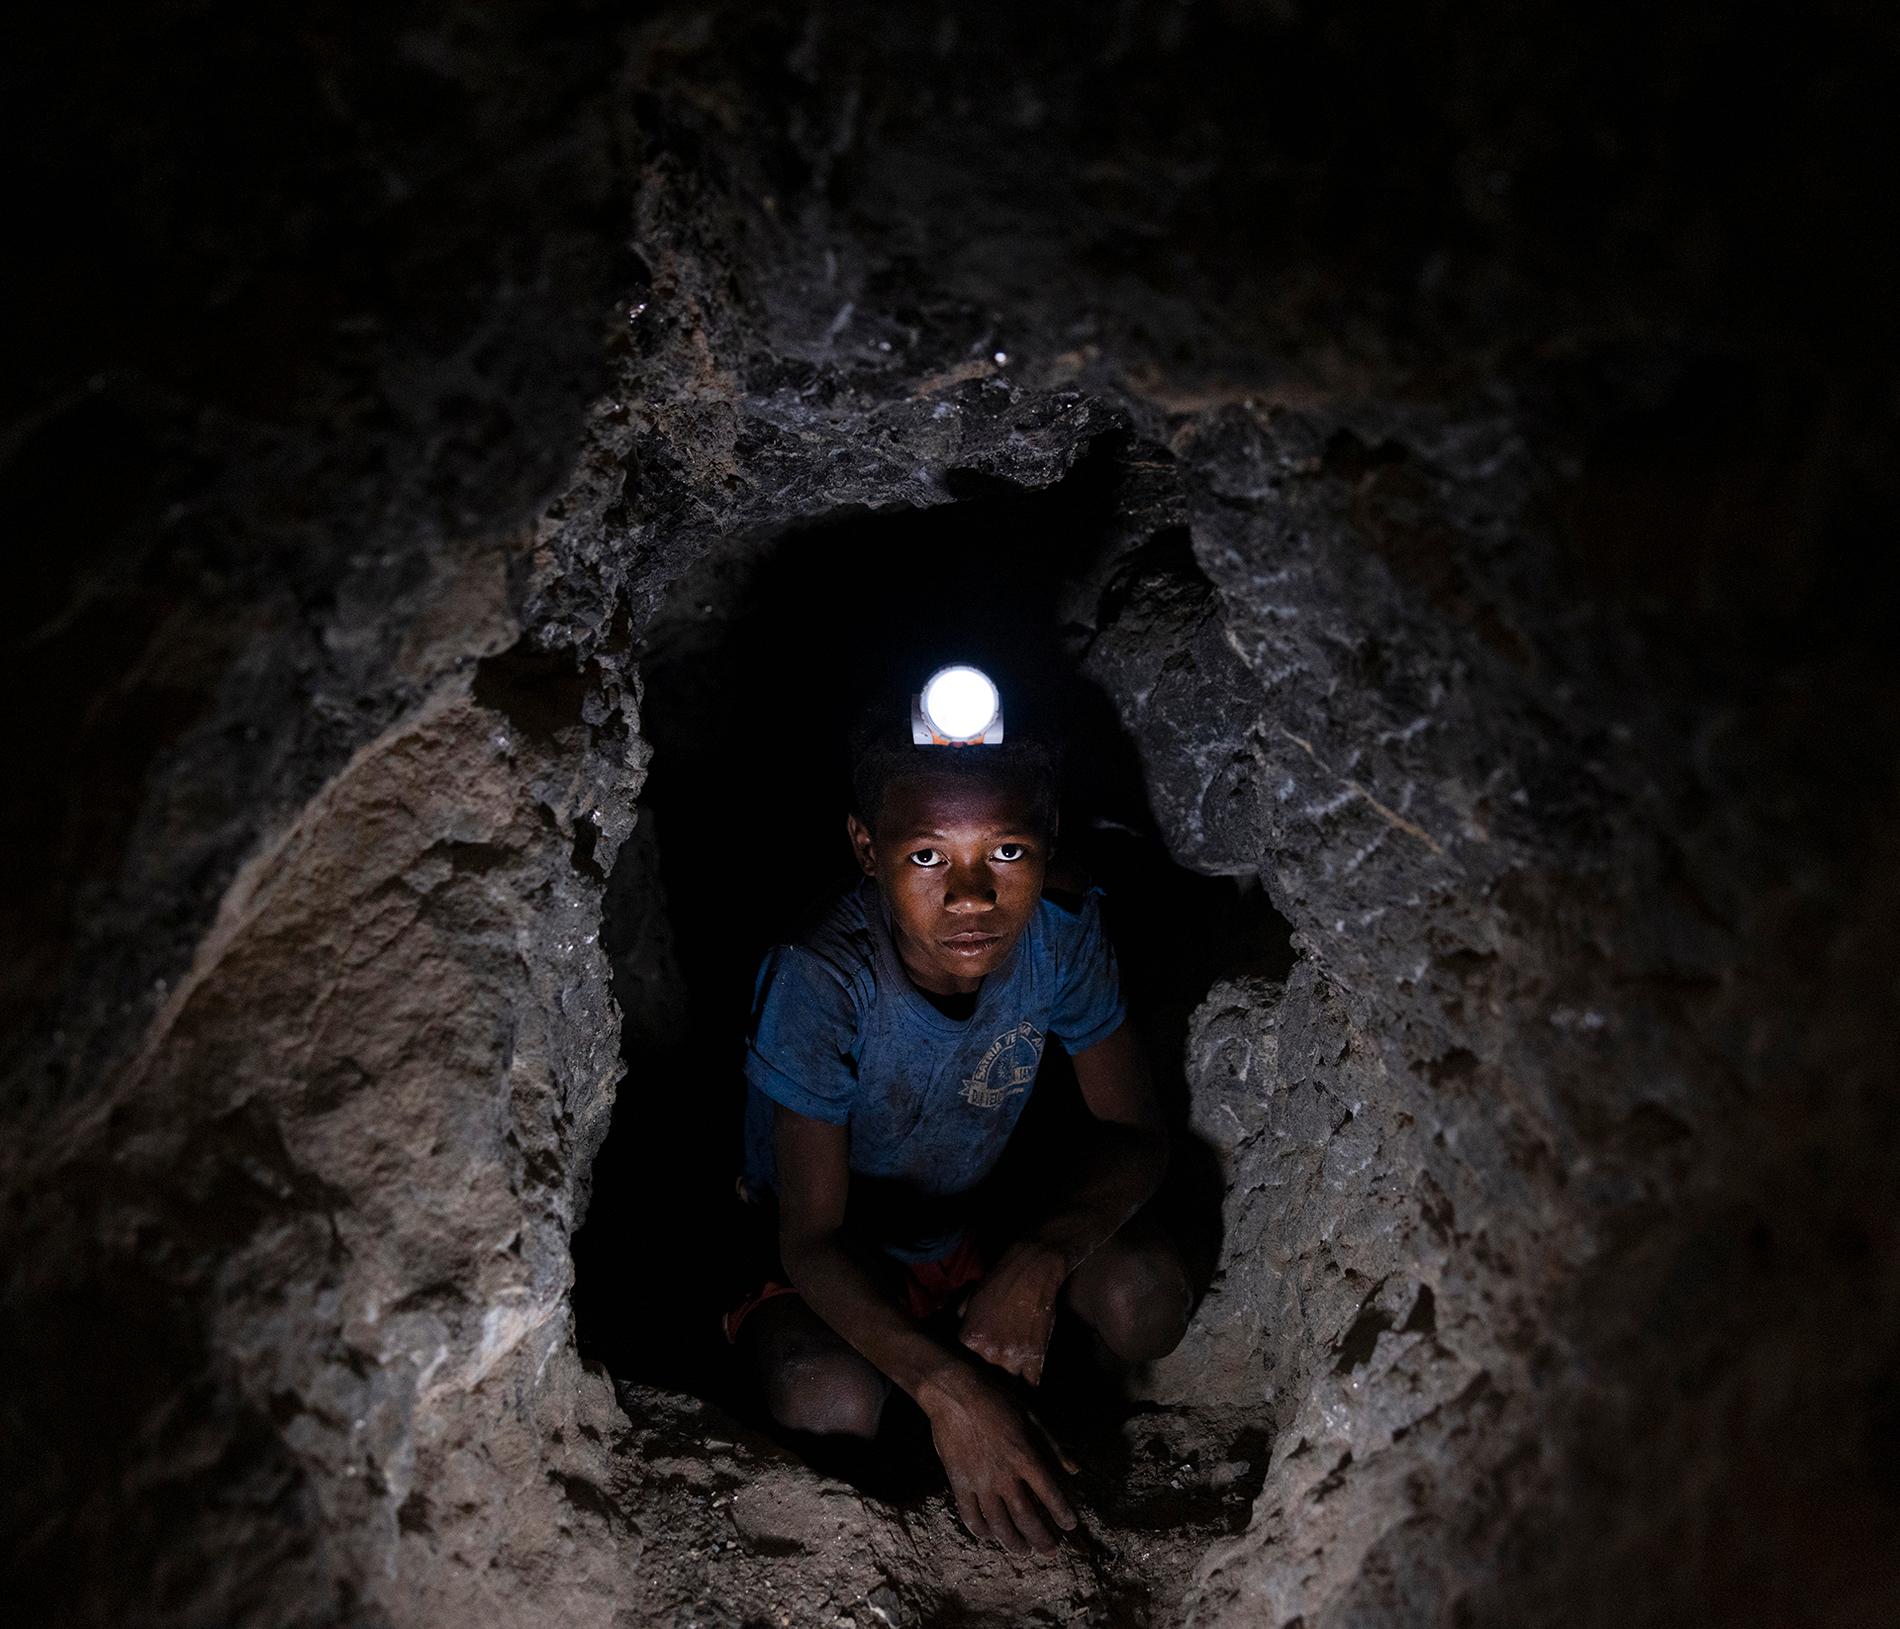 Trettonårige Laha Varivahtse är ett av de många barnen som jobbar för att få fram mineralet glimmer, som sedan används för elbilars batterier. Utan handskar eller hjälm, klädd i en tröja som rivits sönder mot bergsväggarna, beger han sig ner i det trånga gruvhålet.